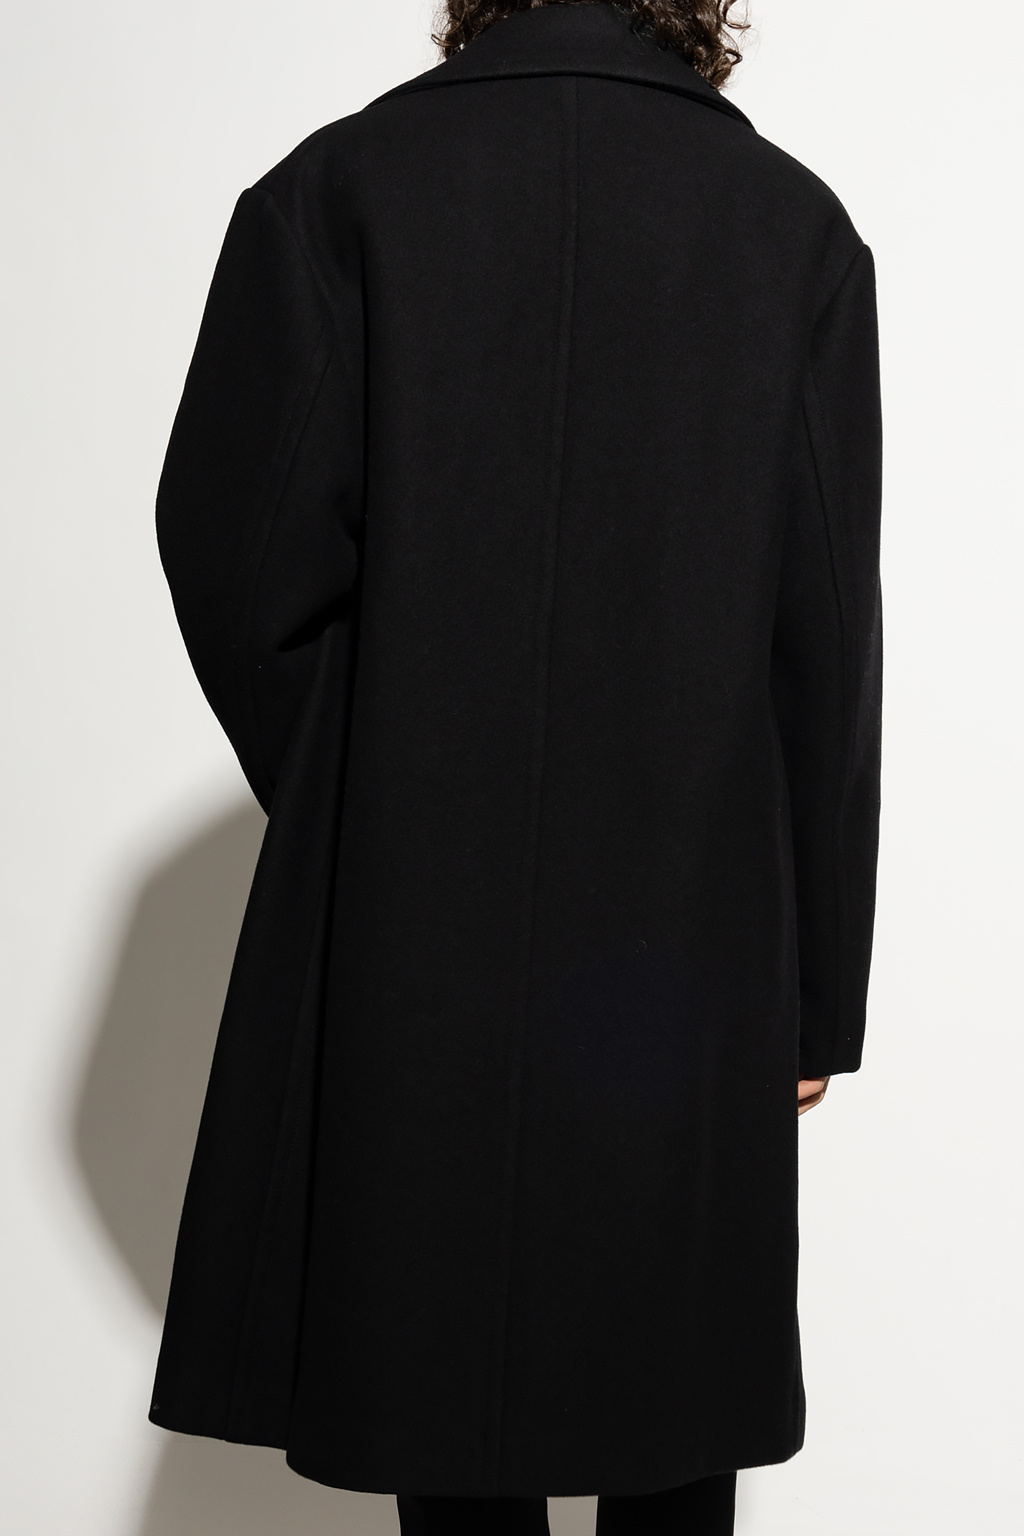 Dries Van Noten Double-breasted coat | Men's Clothing | Vitkac